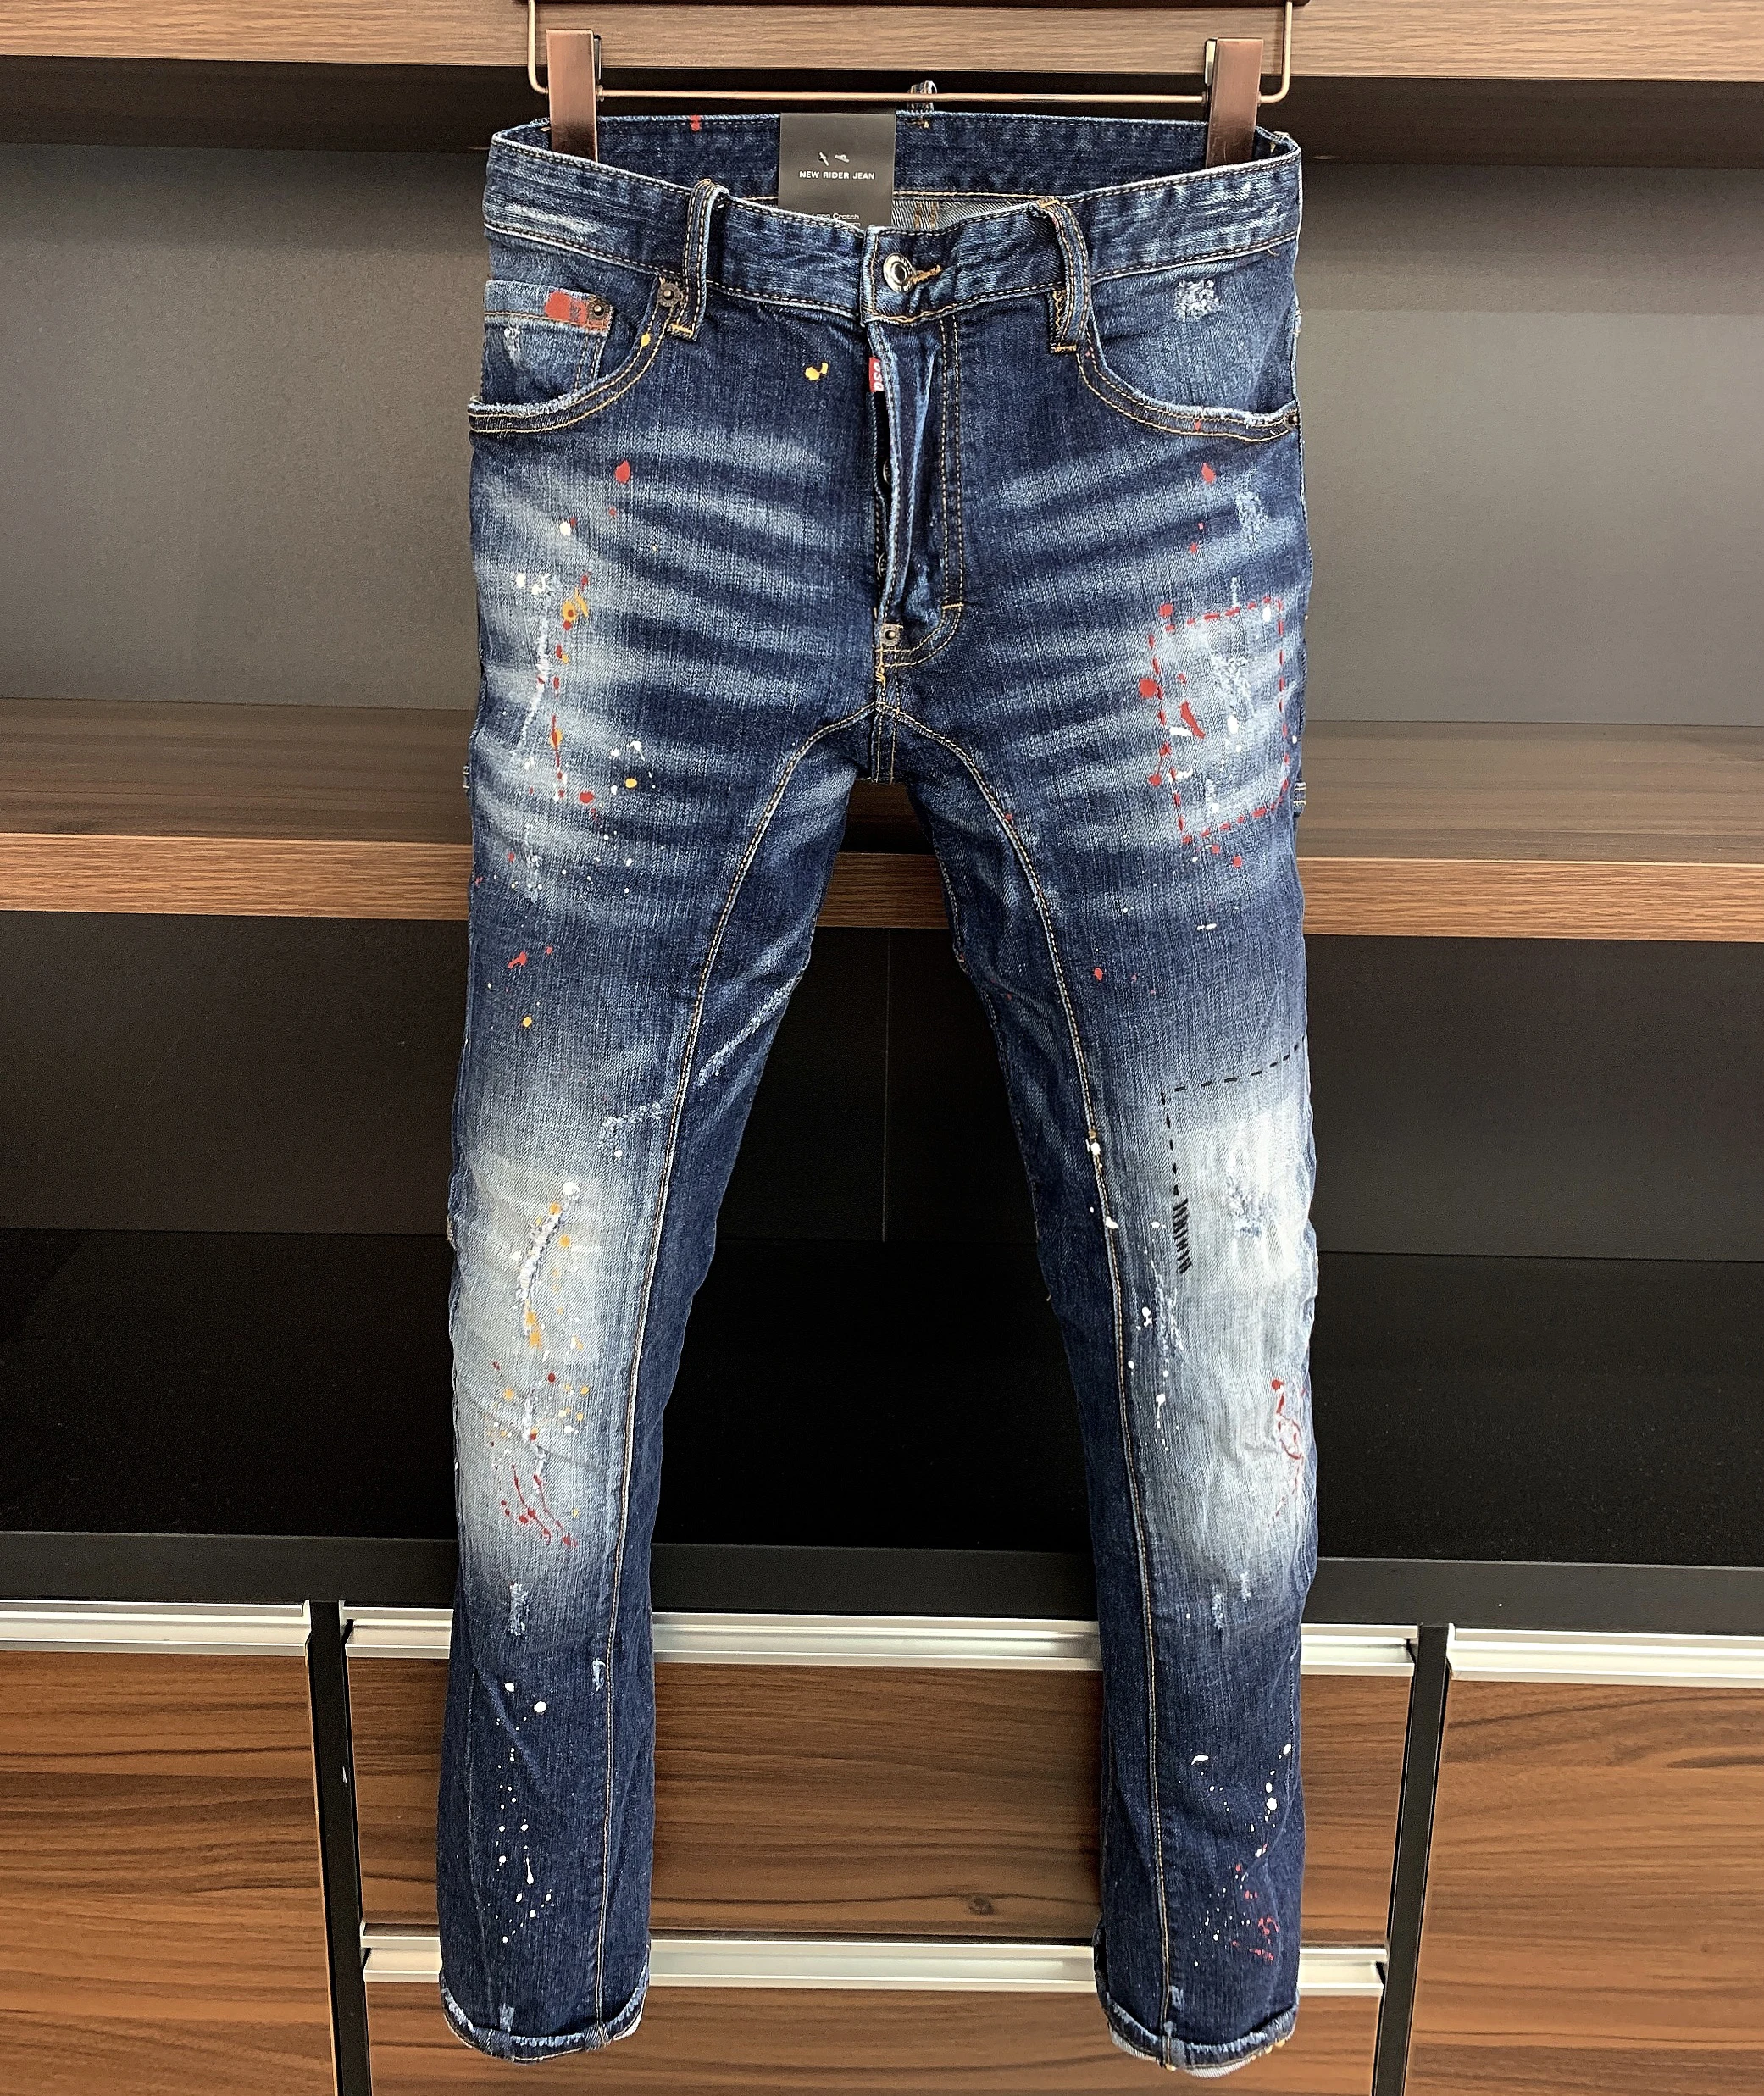 

Dsquared2 Brand Moto & Biker Men D2 Italy Stretch Jeans Pants Men Slim Jeans Denim Trousers Stripe Pencil Pants Jeans for Men